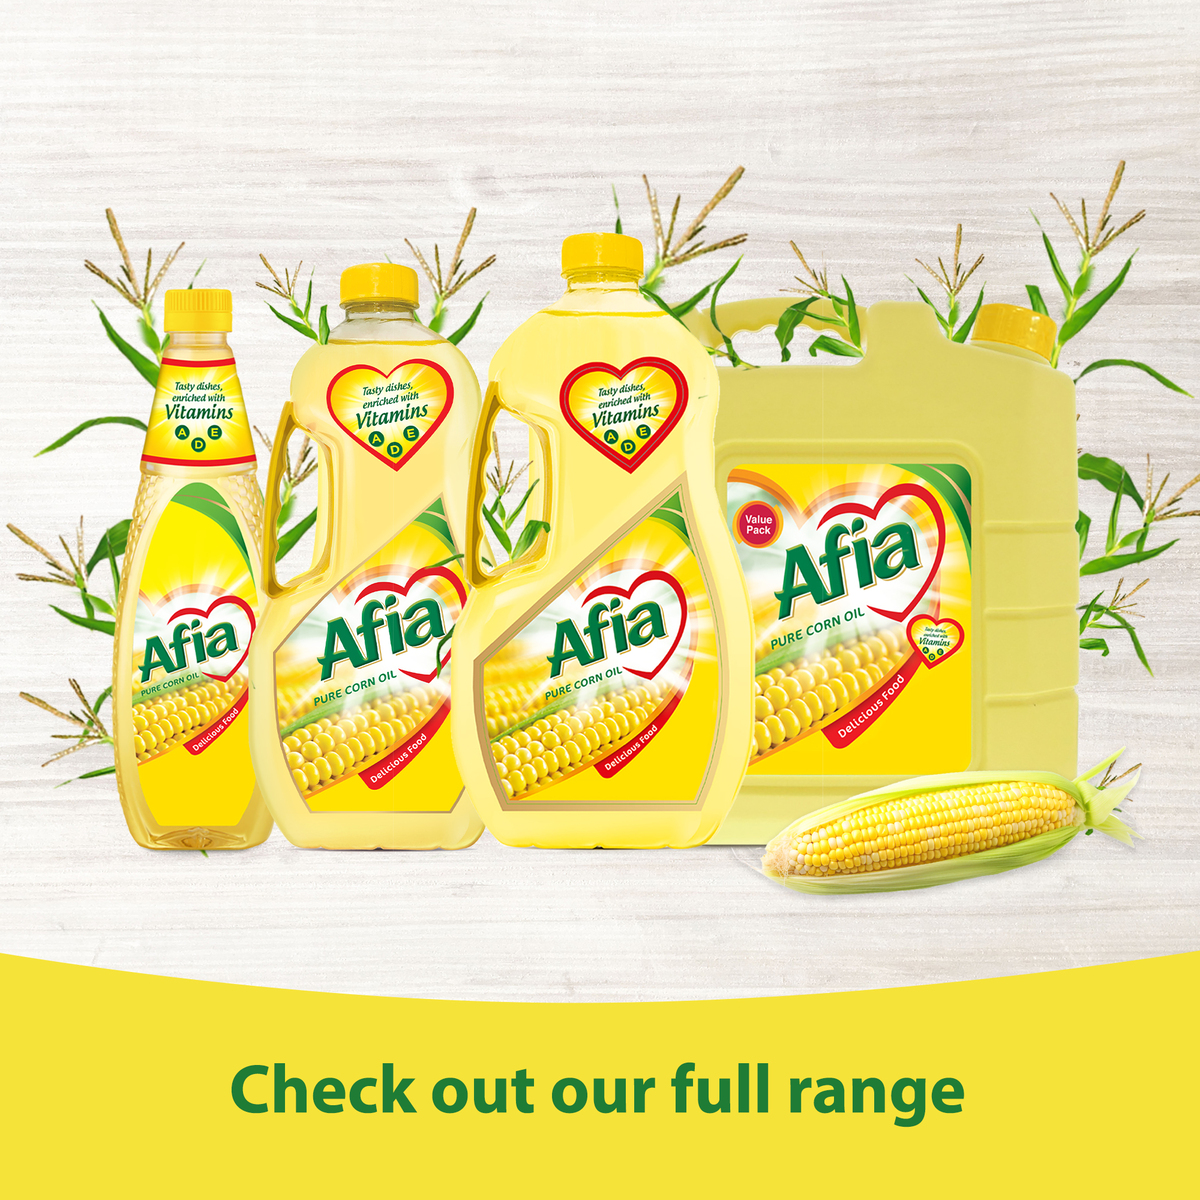 Afia Pure Corn Oil Enriched with Vitamins A D & E 2.9 Litres